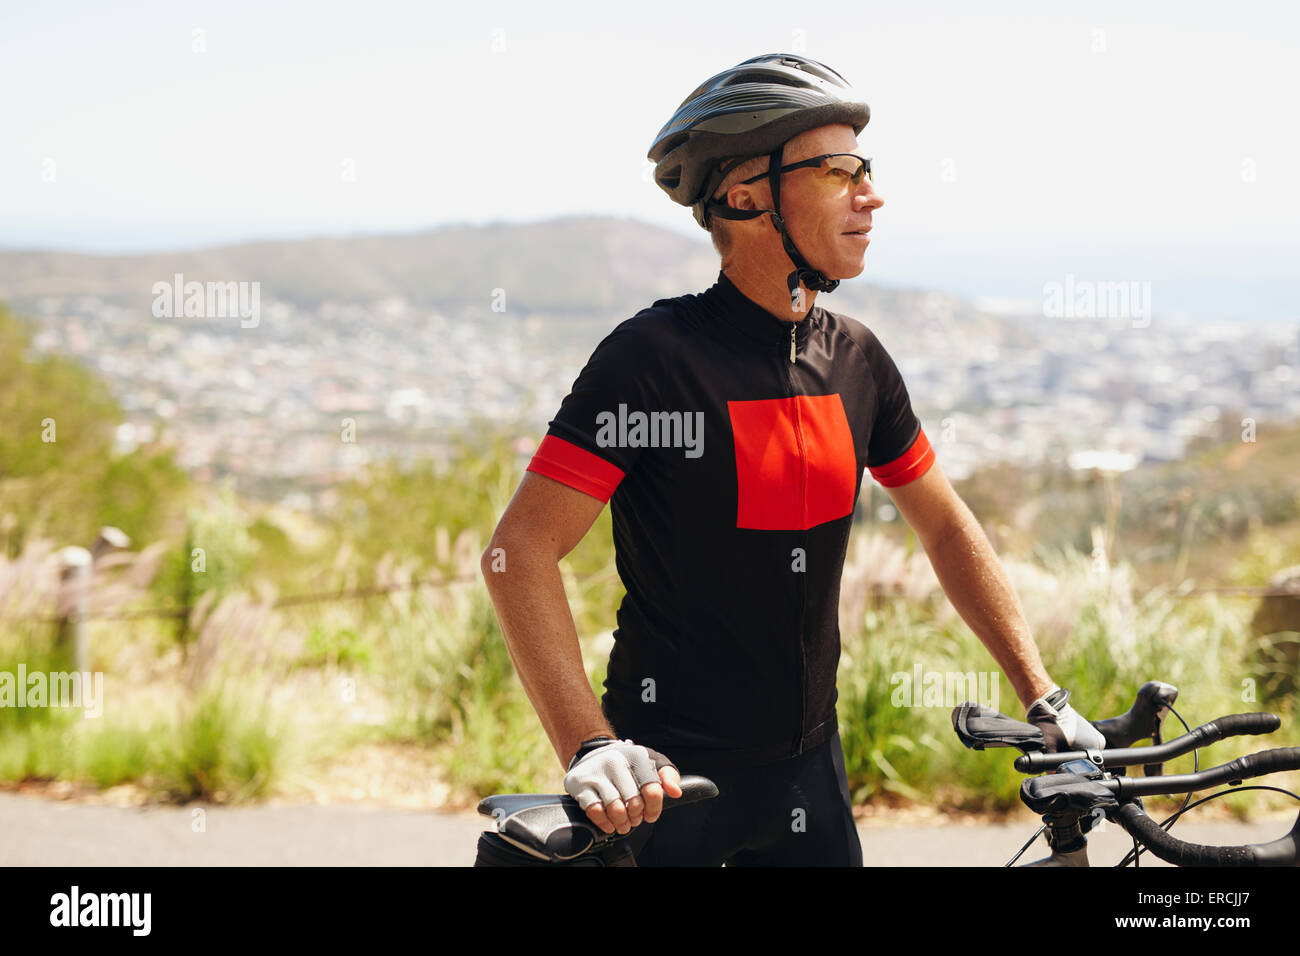 Junge Mann mit Helm und Sonnenbrille steht mit seinem Fahrrad wegsehen. Männliche Radfahrer Ausbildung auf Land. Stockfoto